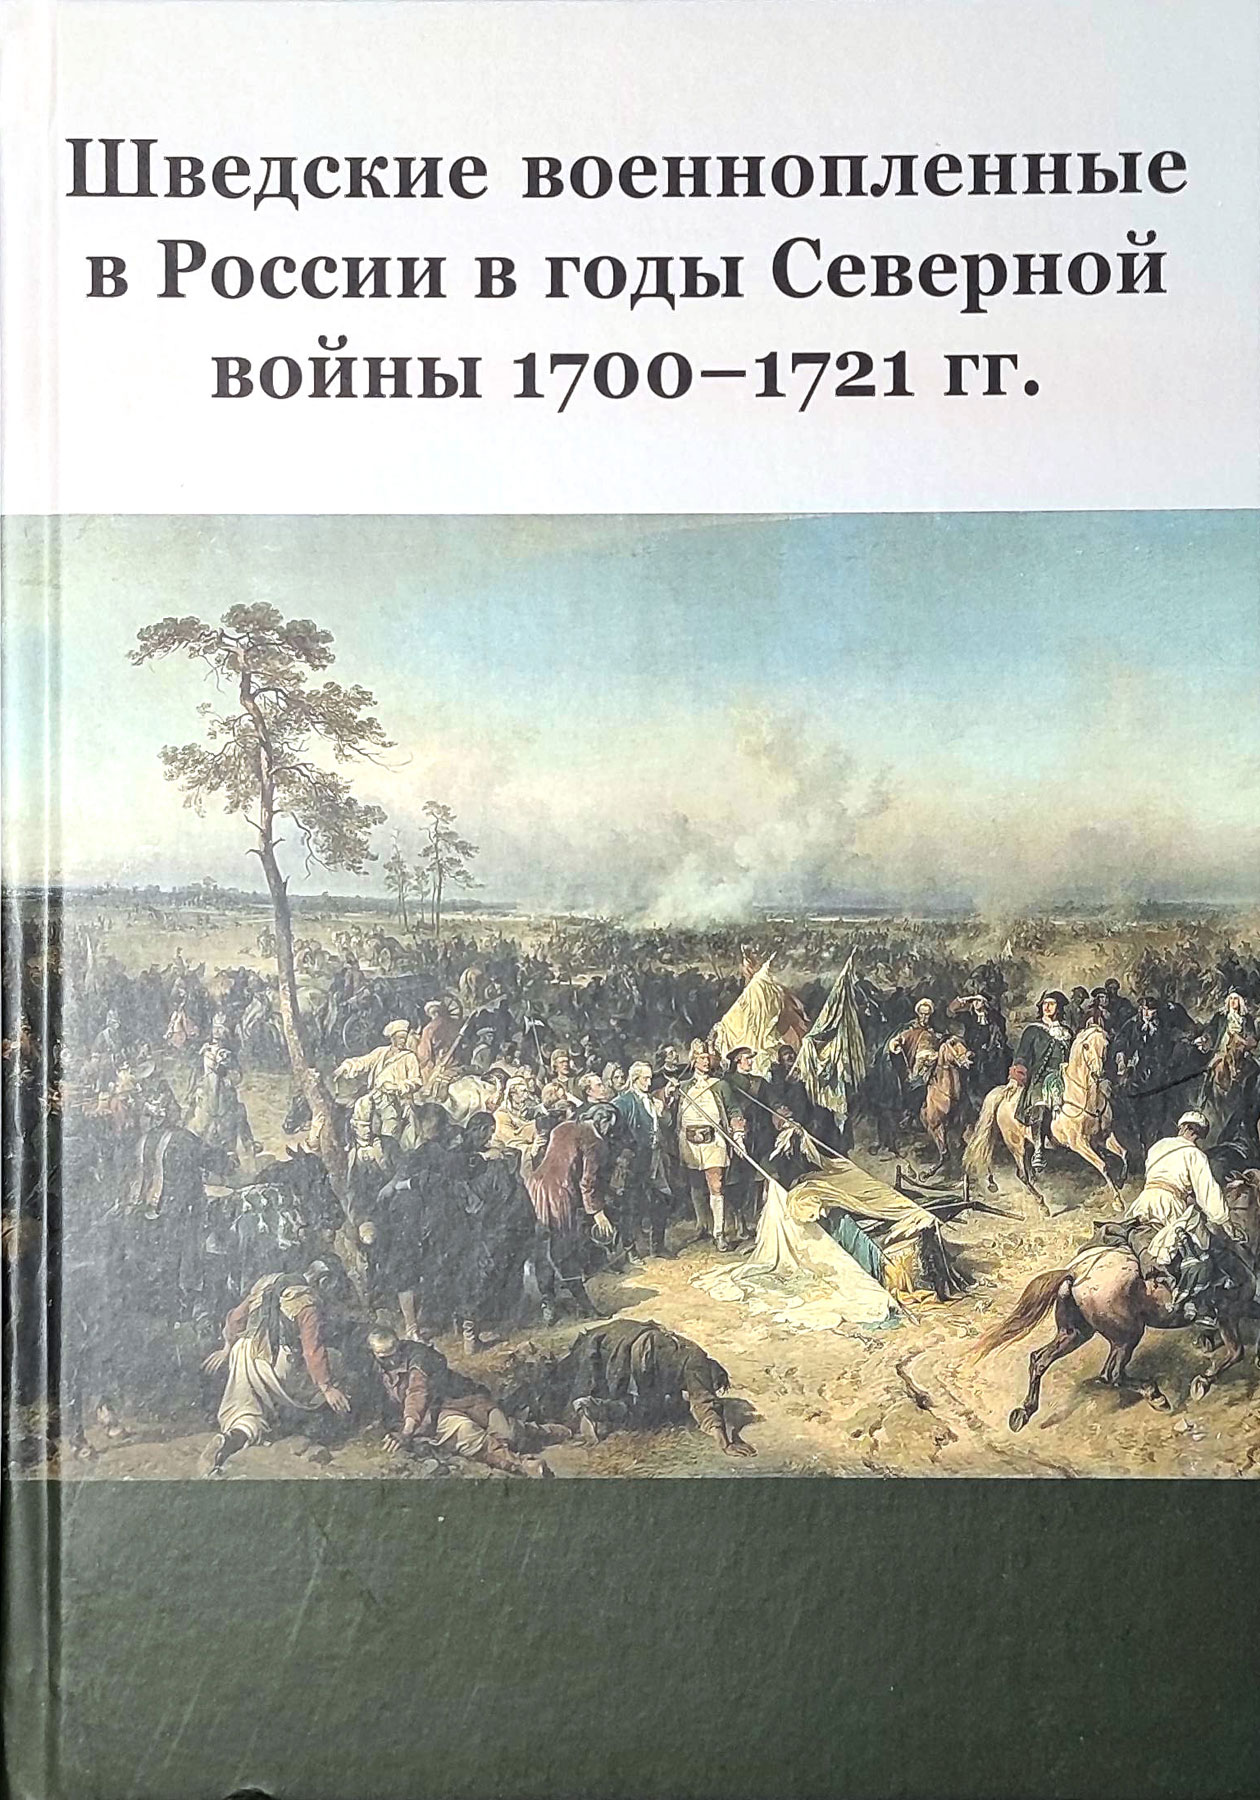         1700-1721 .